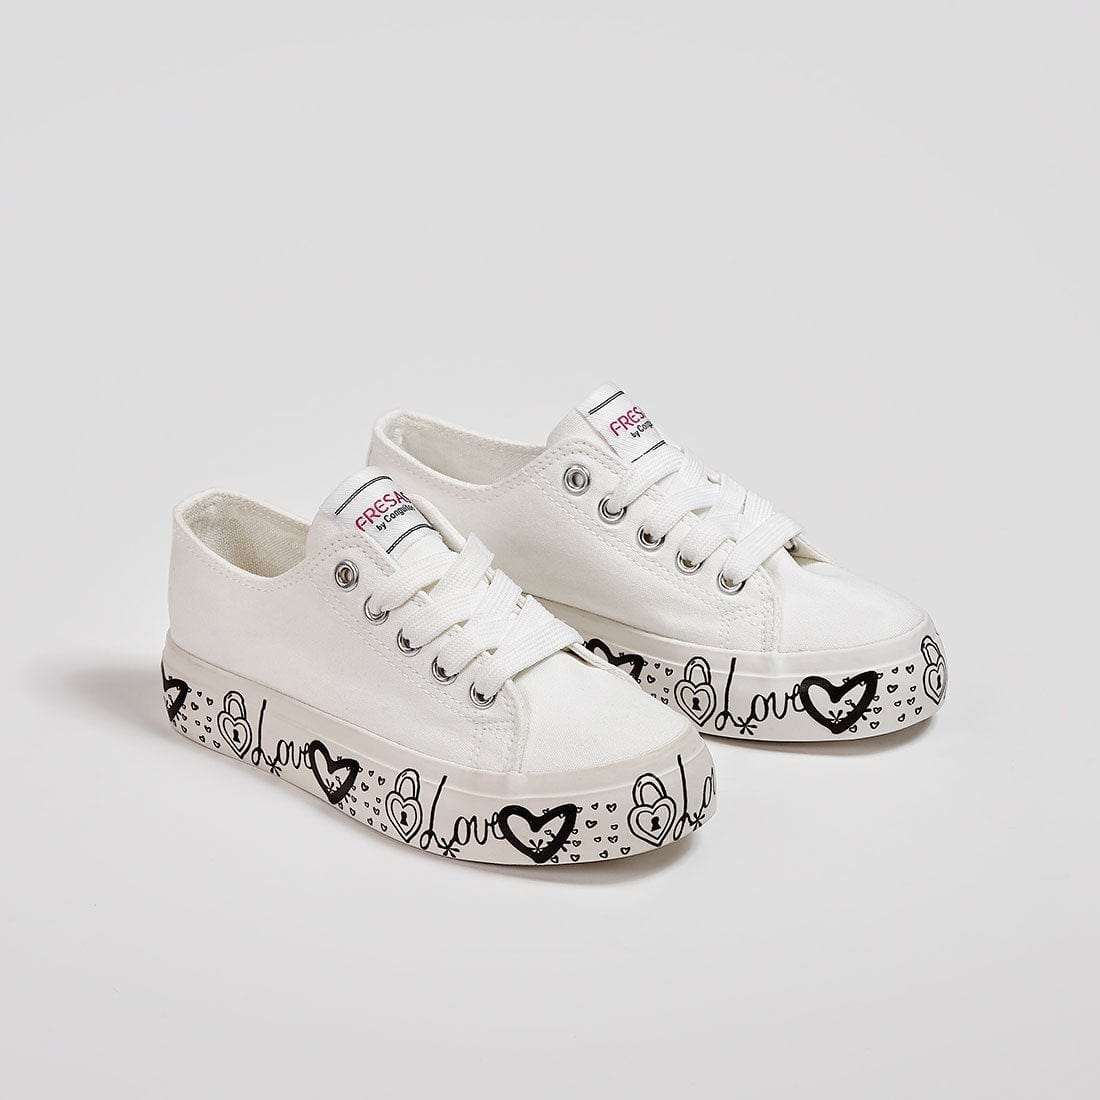 FRESAS CON NATA Shoes Girl's White Canvas Sneakers